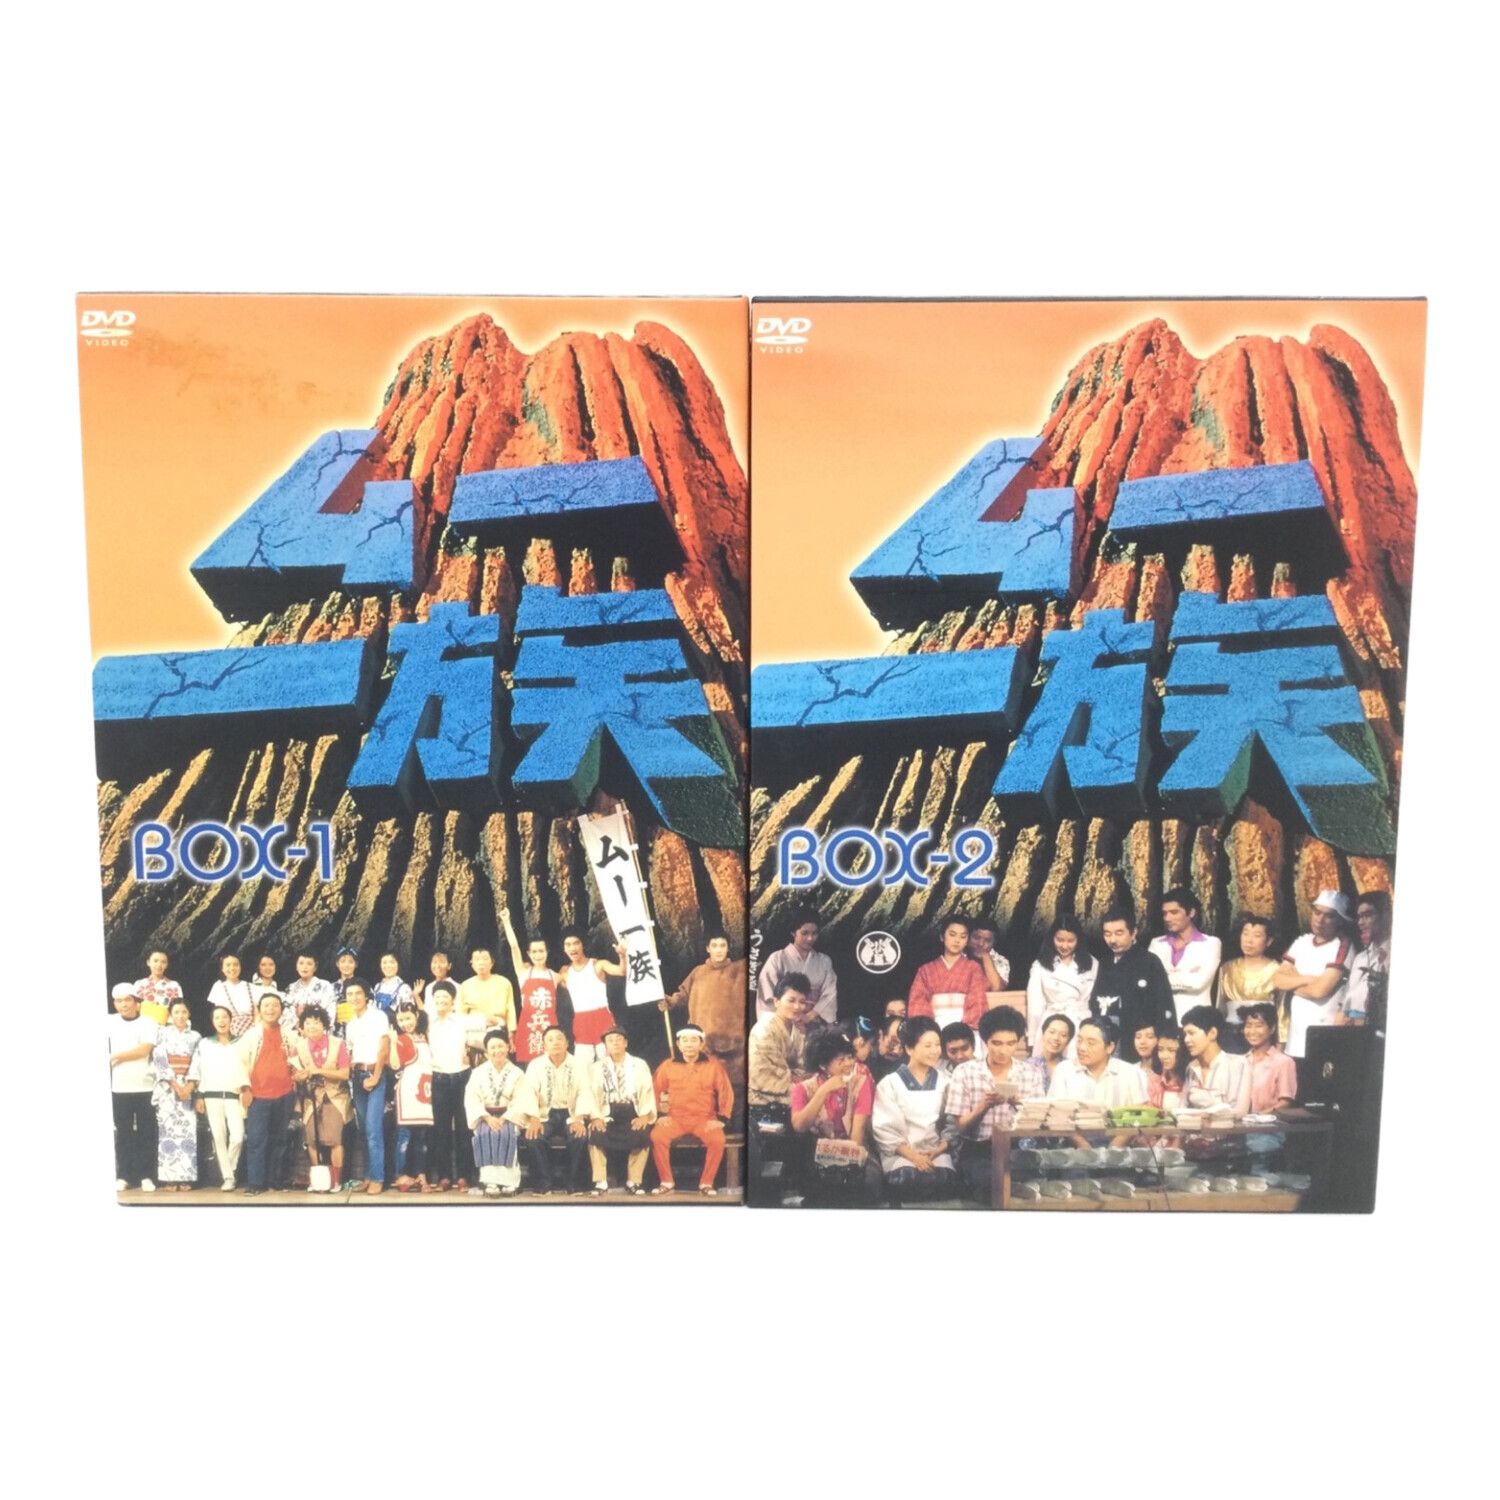 高速配送 【新品DVD】ドラマ「ムー」4巻セット BOX-1.2 chouja.fishing